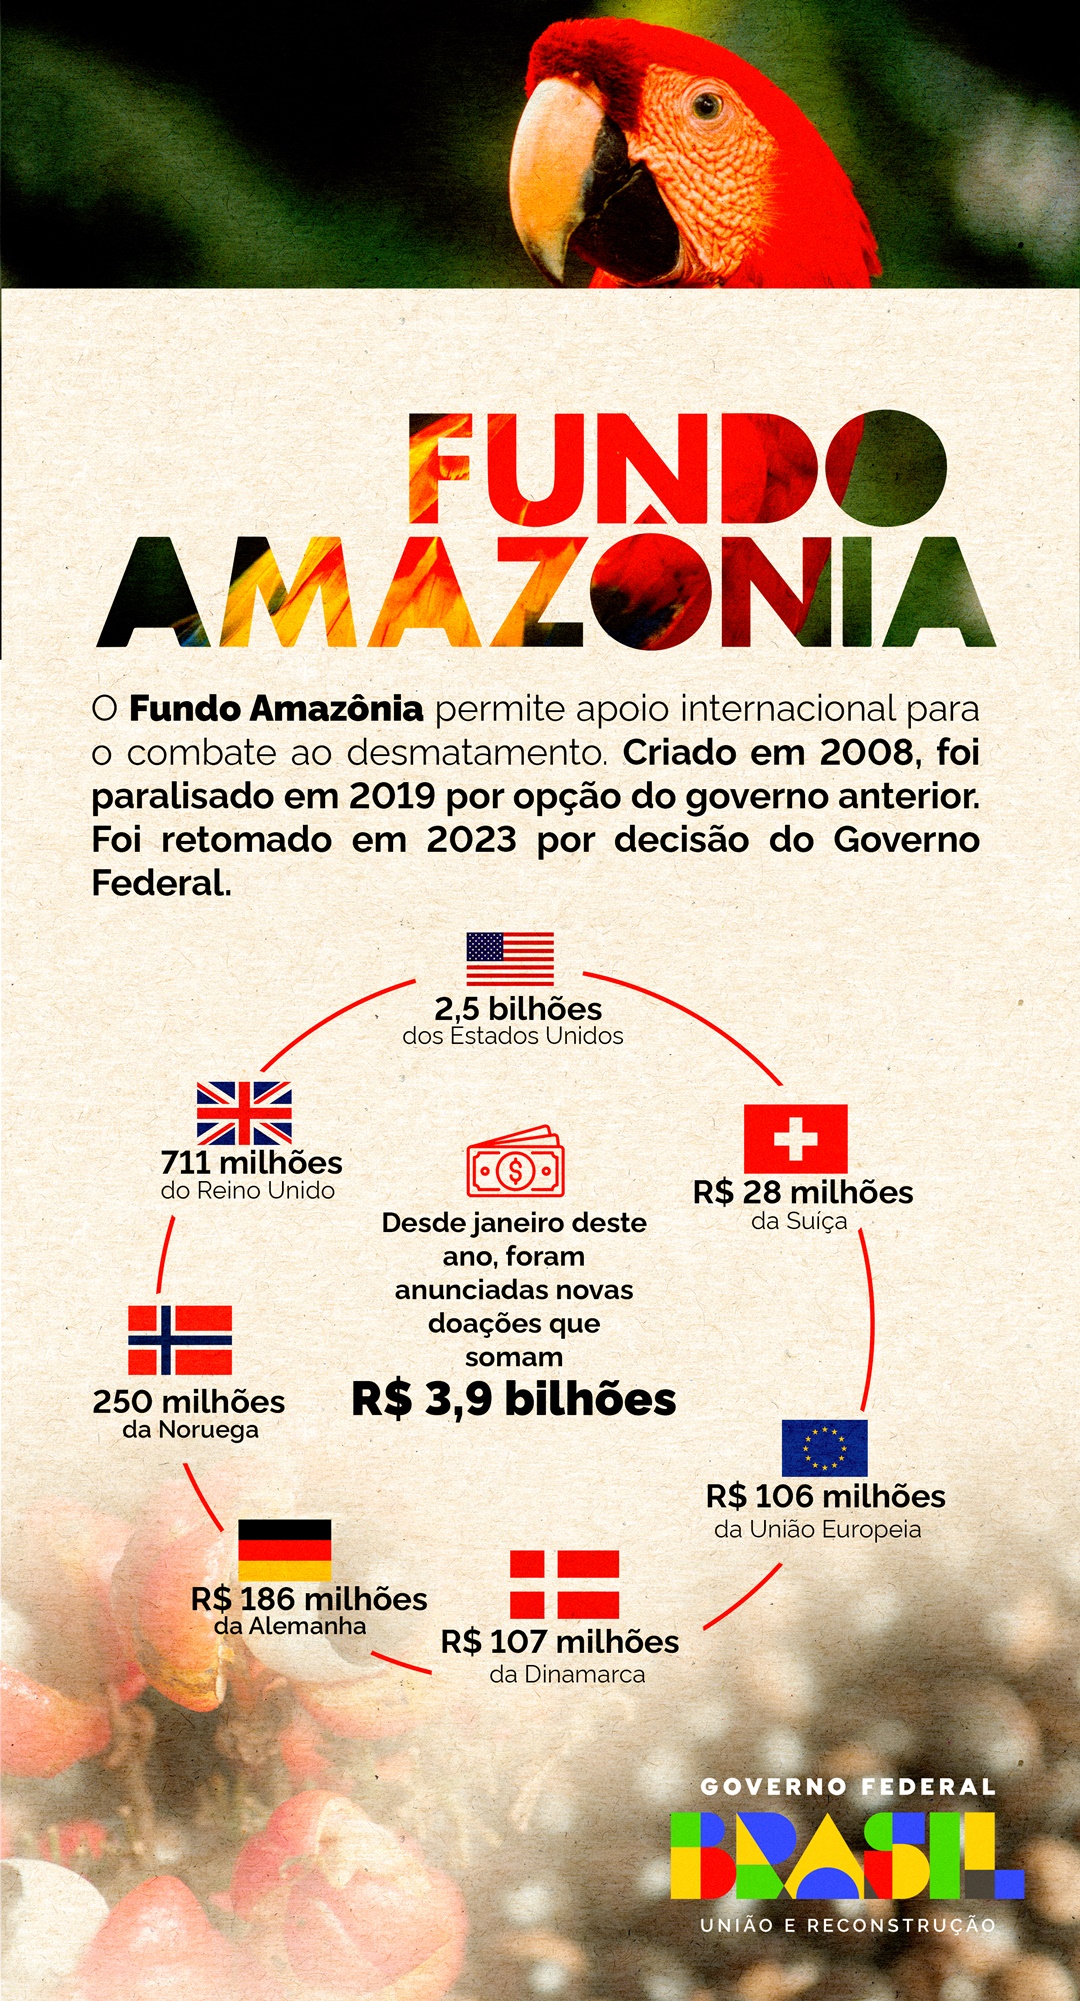 Principais investimentos no Fundo Amazônia